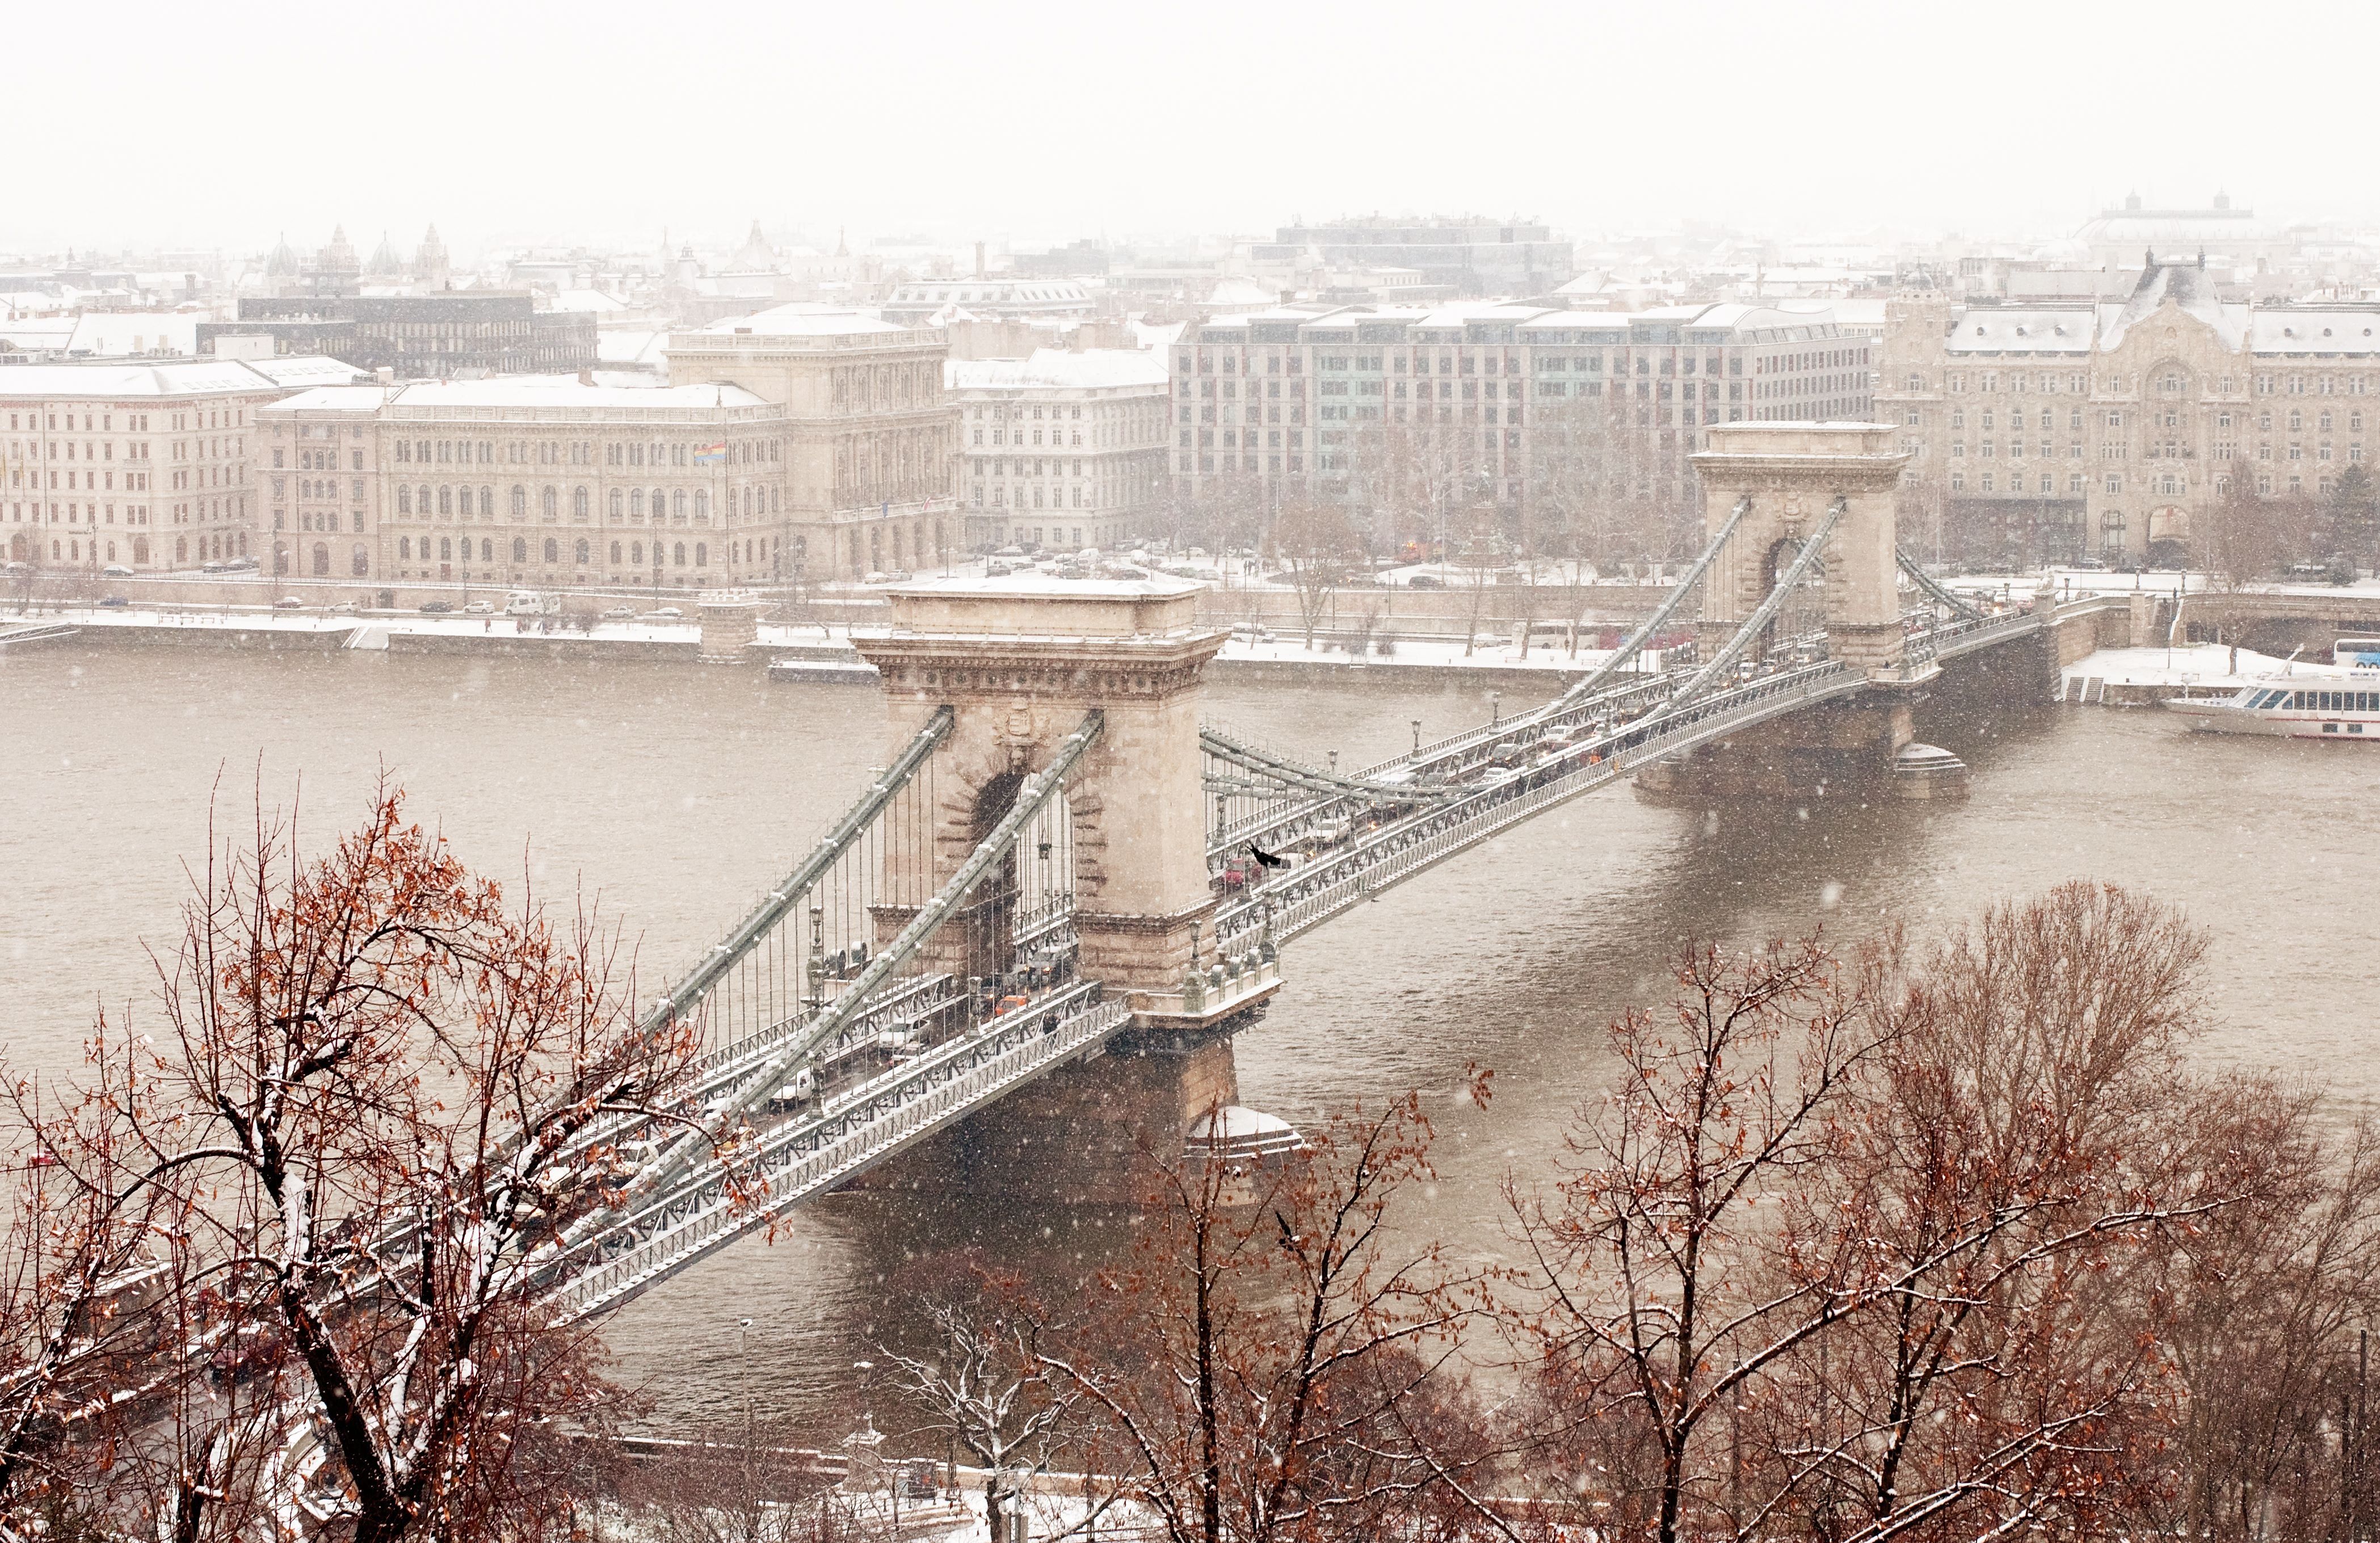 Így küzd Budapest a havazással